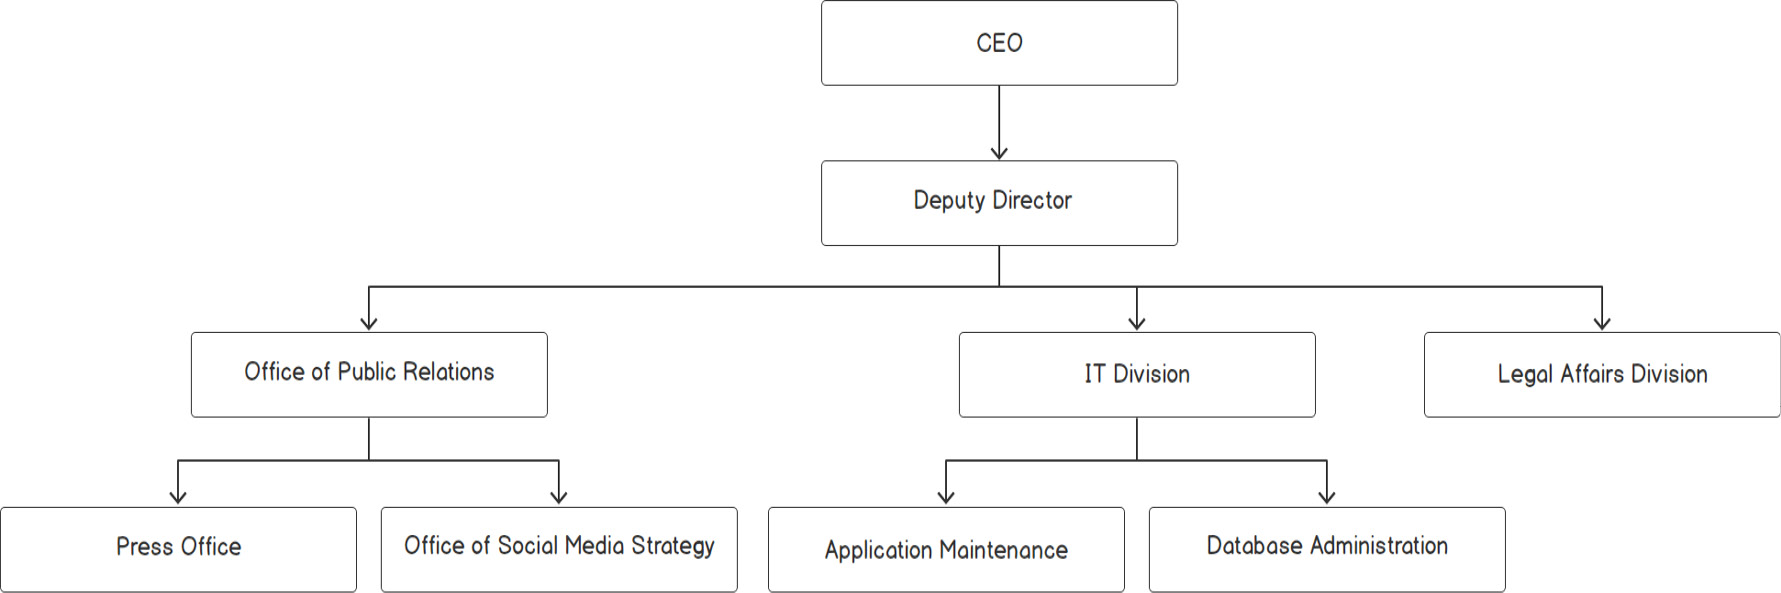 Figure 2.1: Organization structure